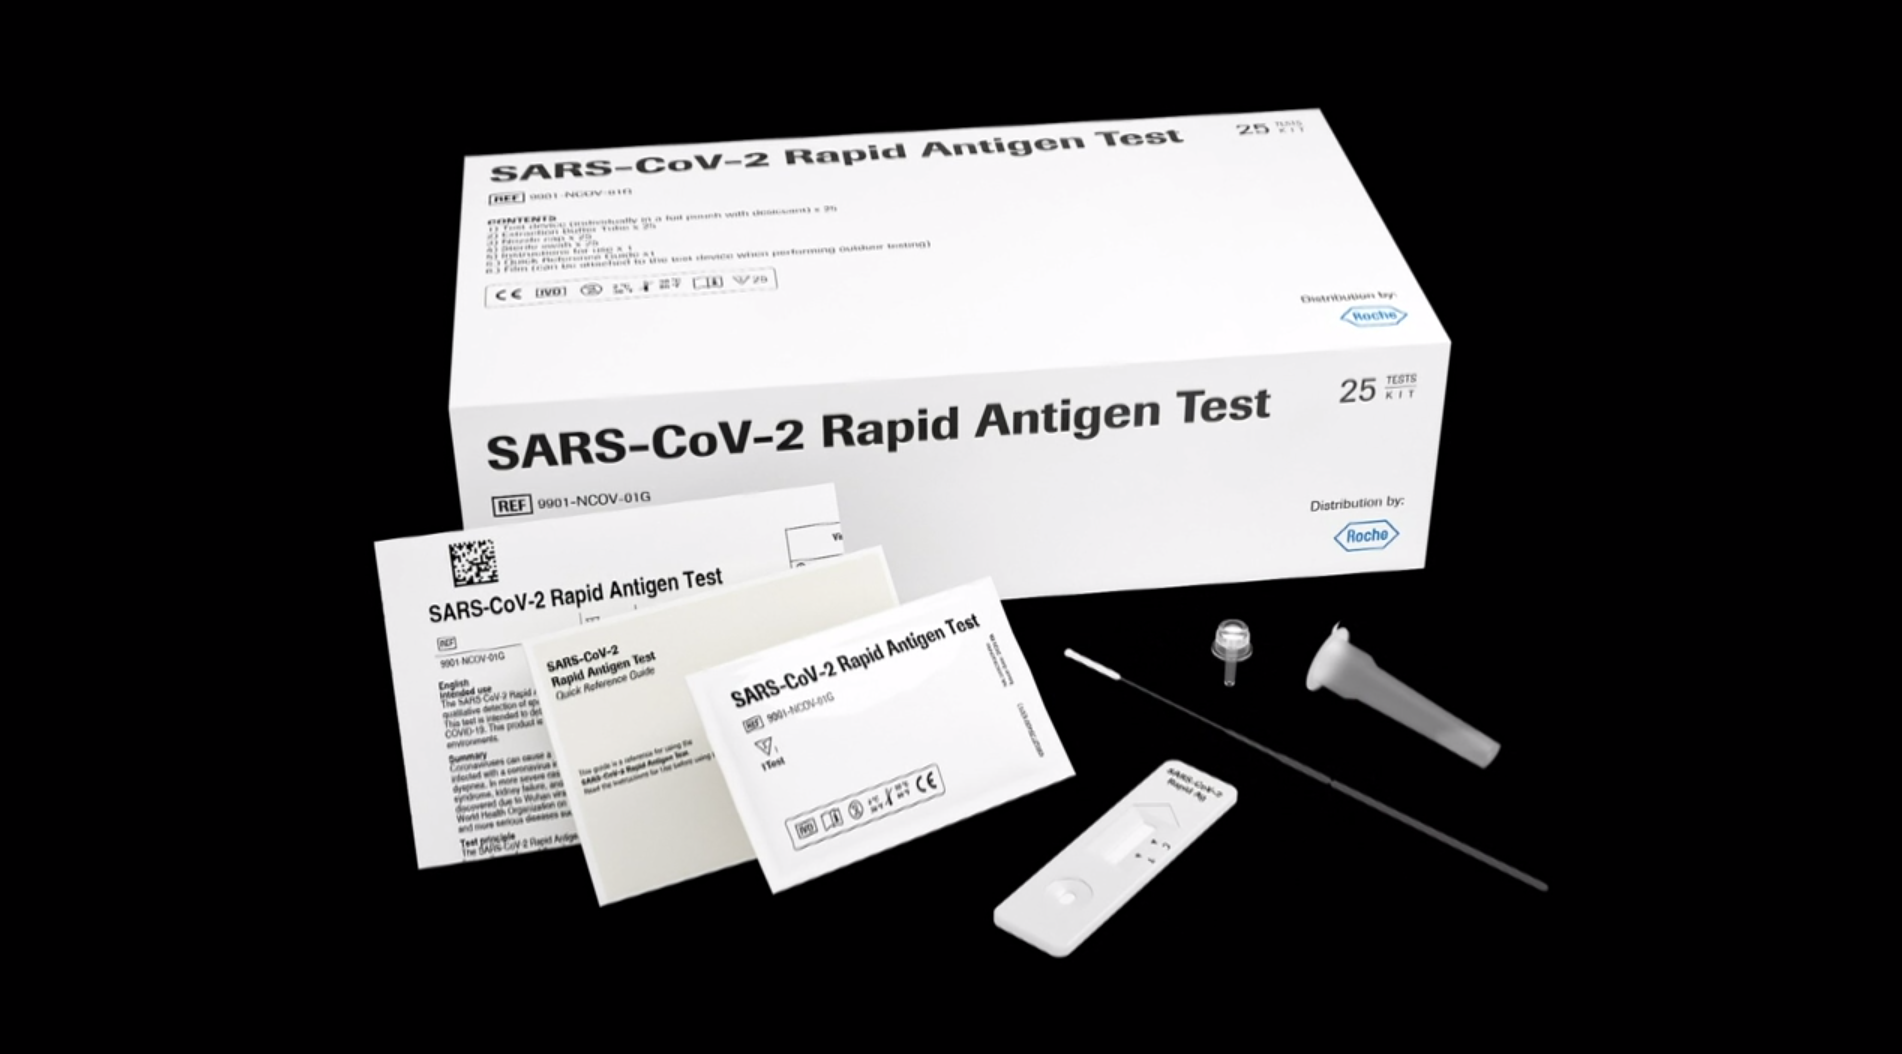 Immagine di un kit medico (confezione tipica da casa farmaceutica) con scritta SARS-CoV-2 Rapid Antigen Test